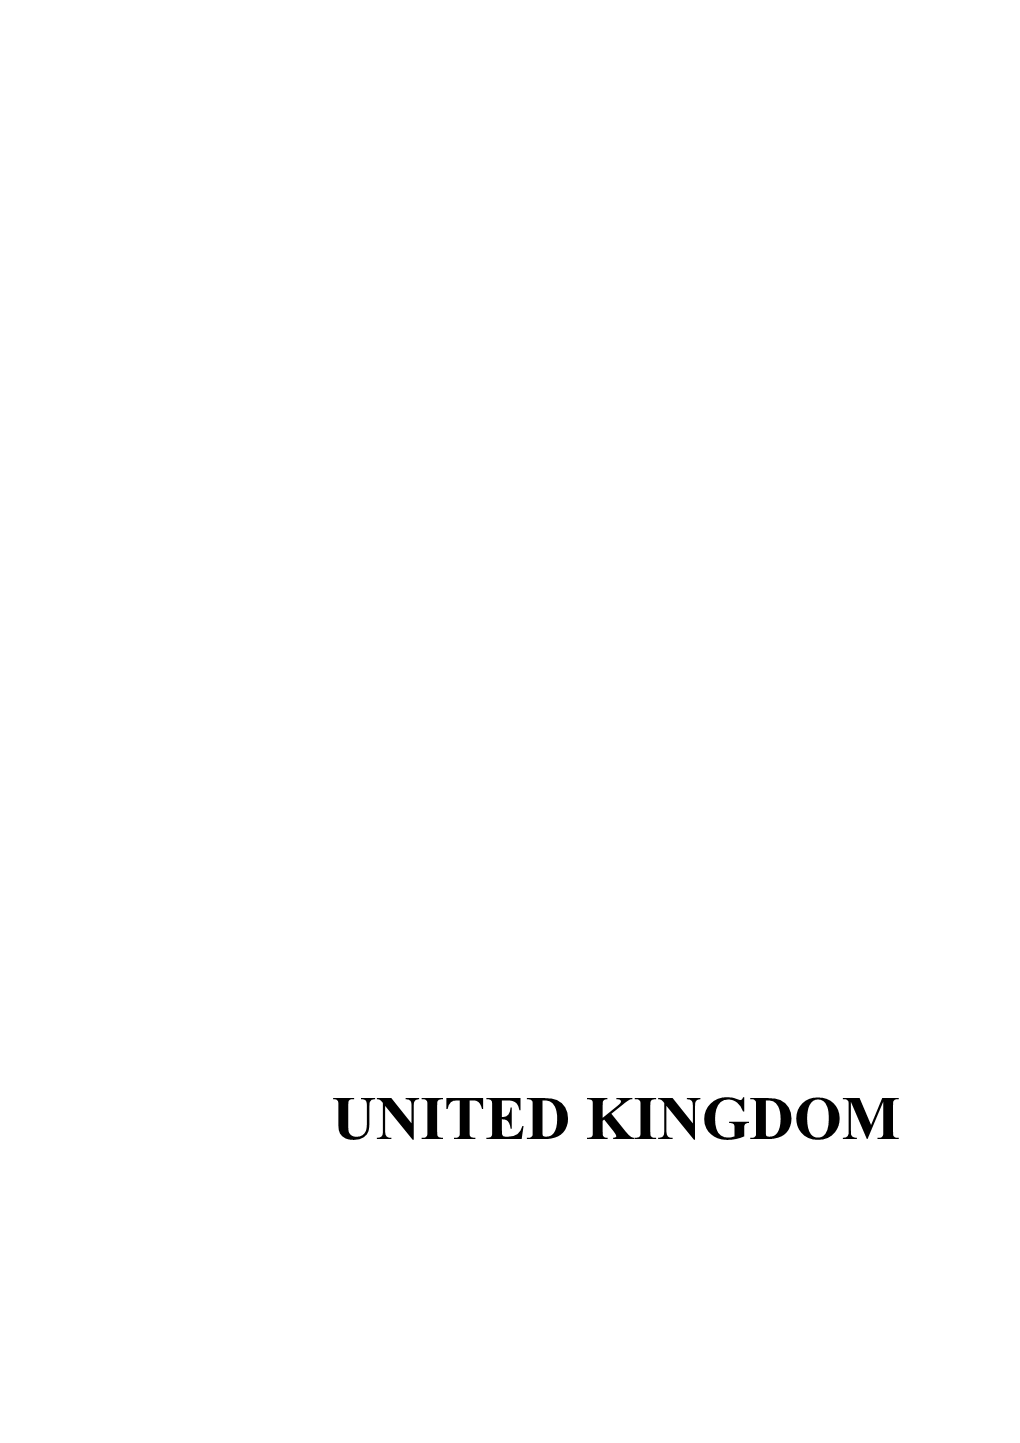 United Kingdom 840 United Kingdom United Kingdom